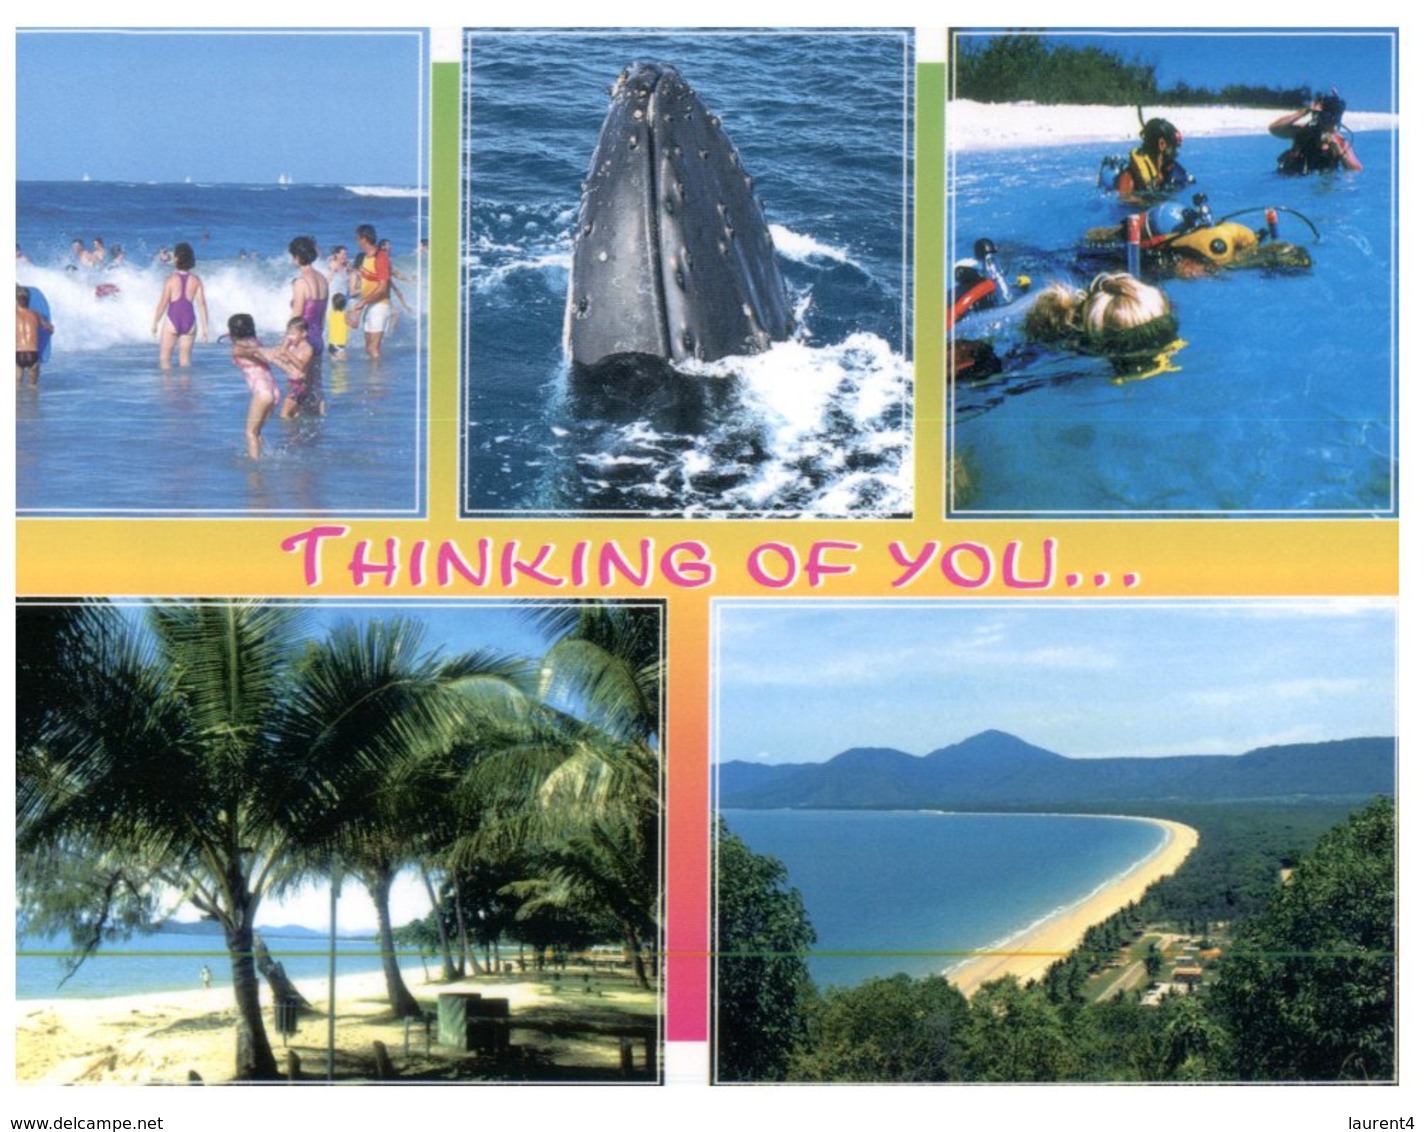 (ED 28) Australia - QLD - Thinking Of You... - Sunshine Coast